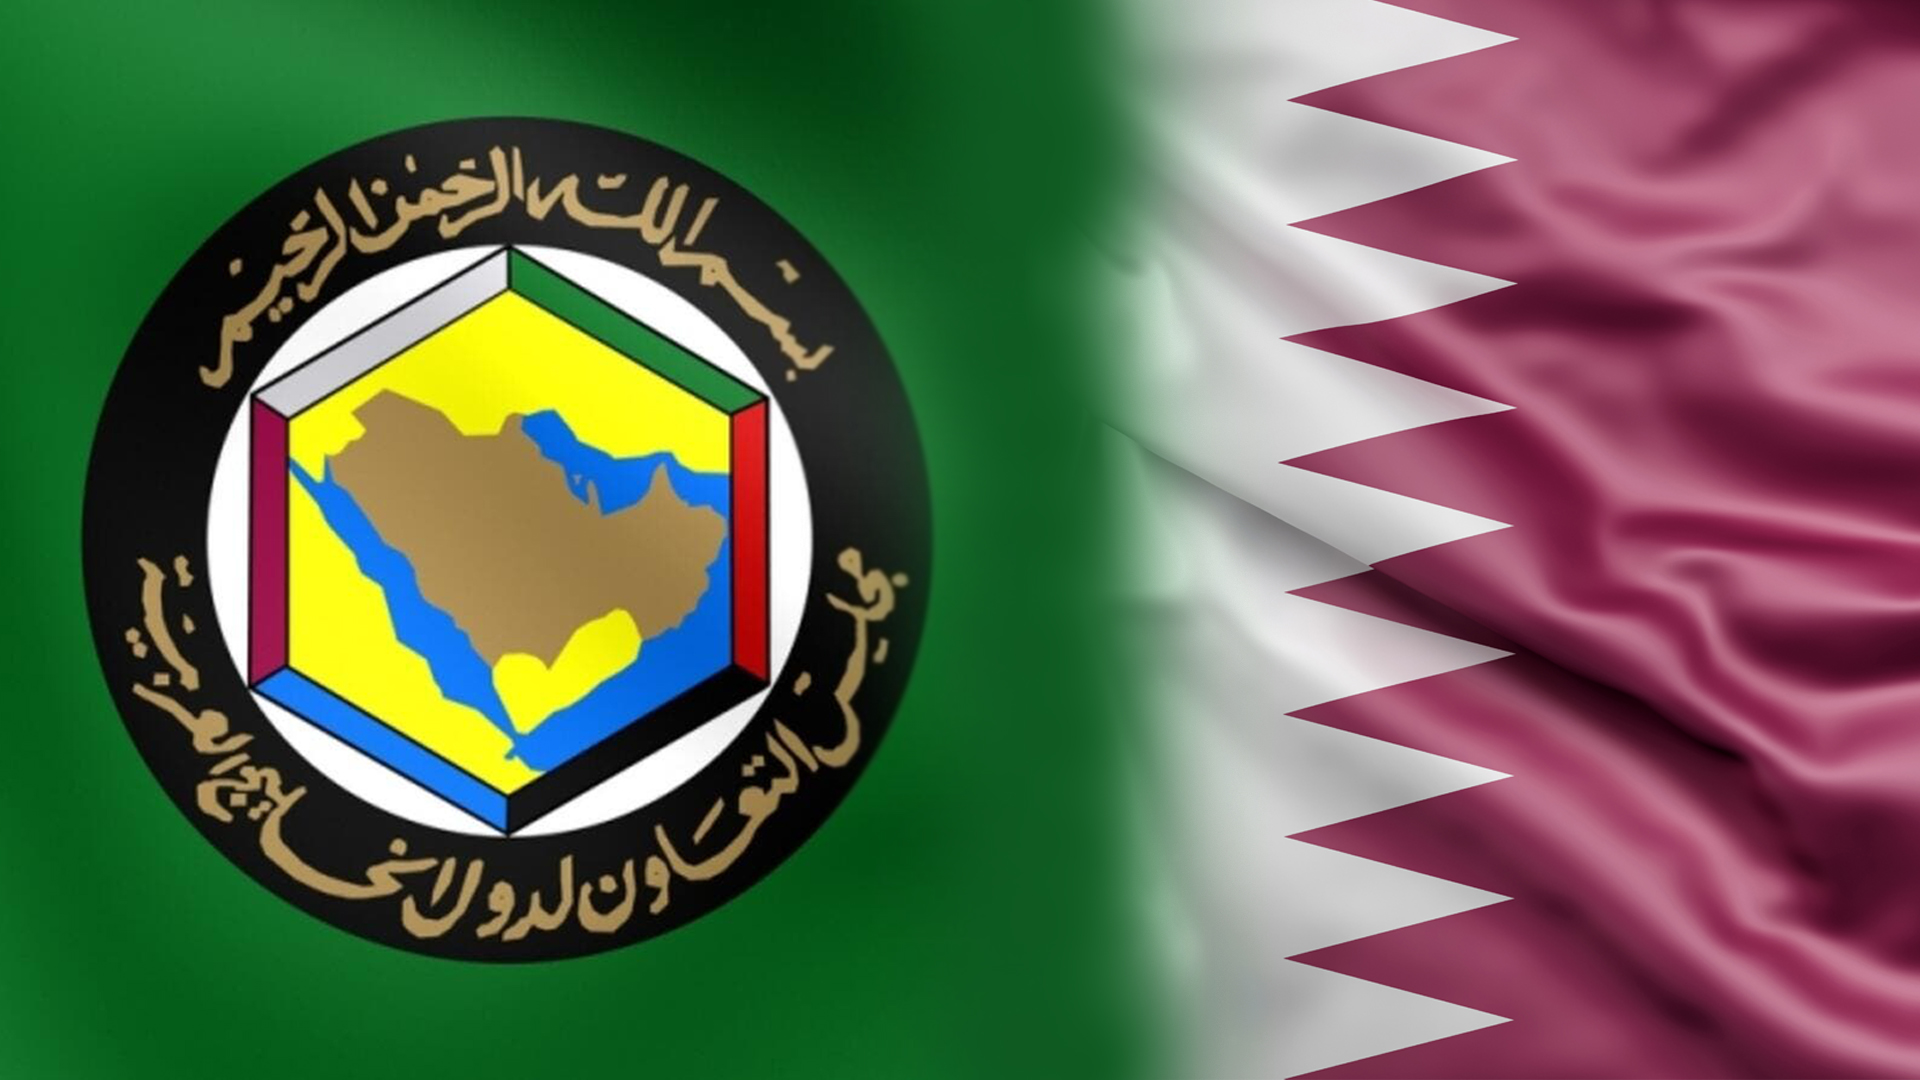 Boycotting Qatar – a strategic necessity